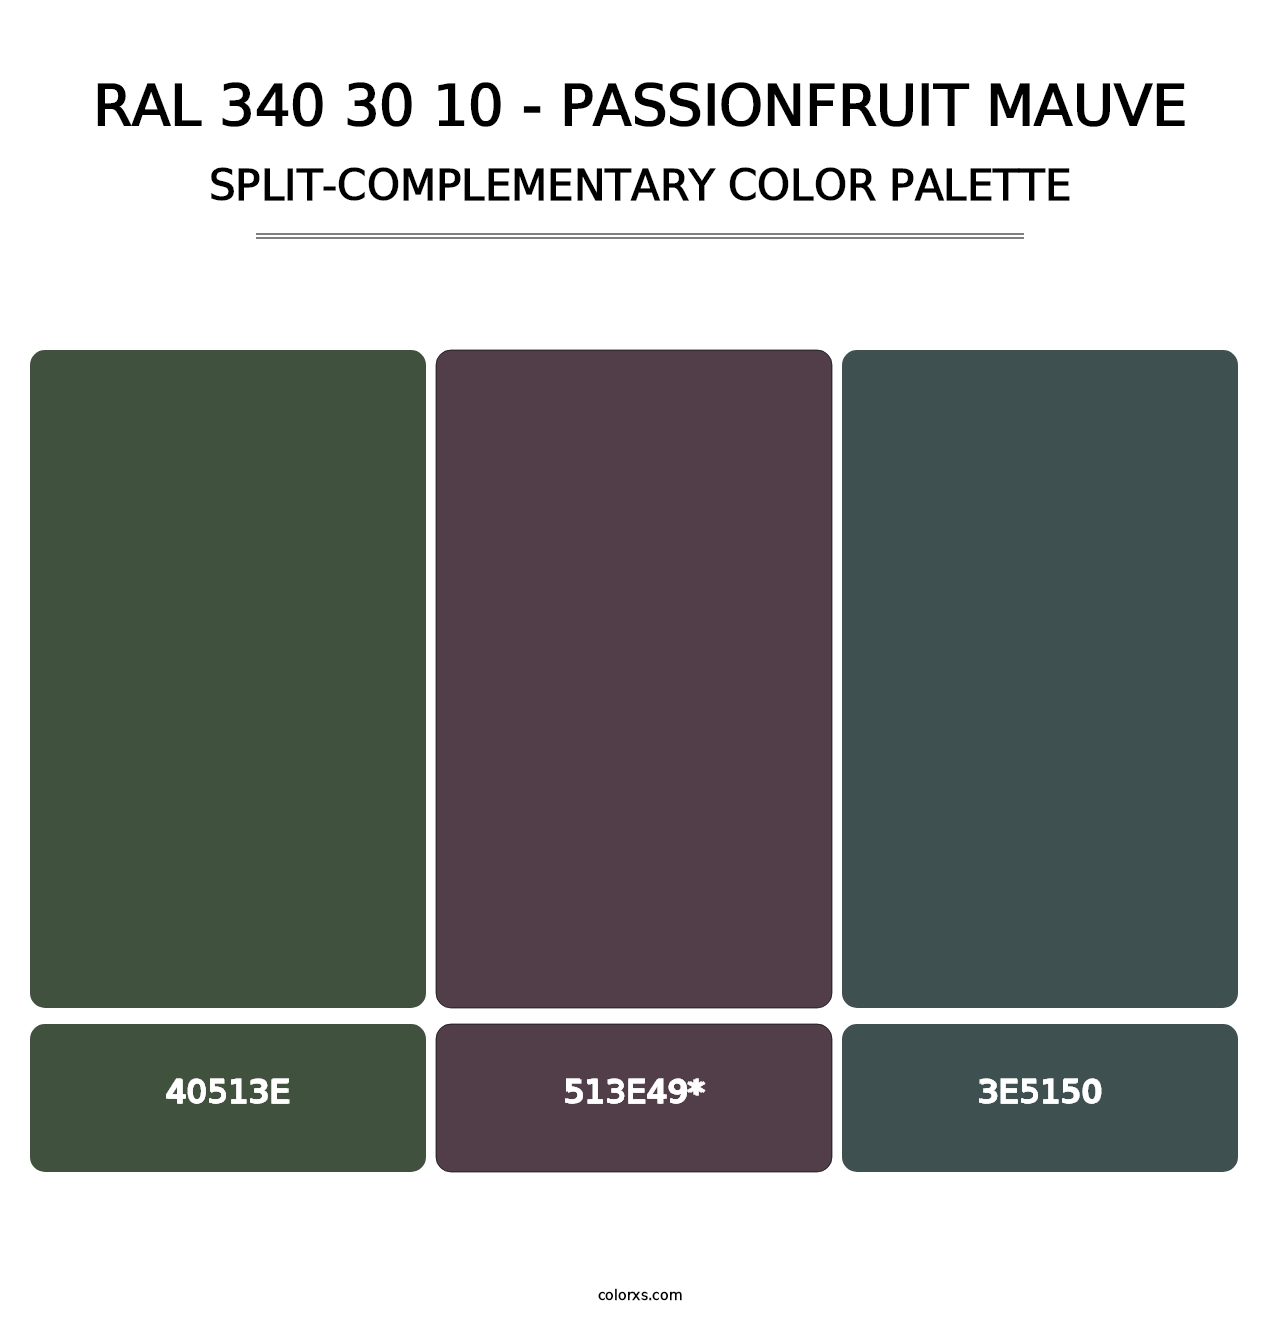 RAL 340 30 10 - Passionfruit Mauve - Split-Complementary Color Palette